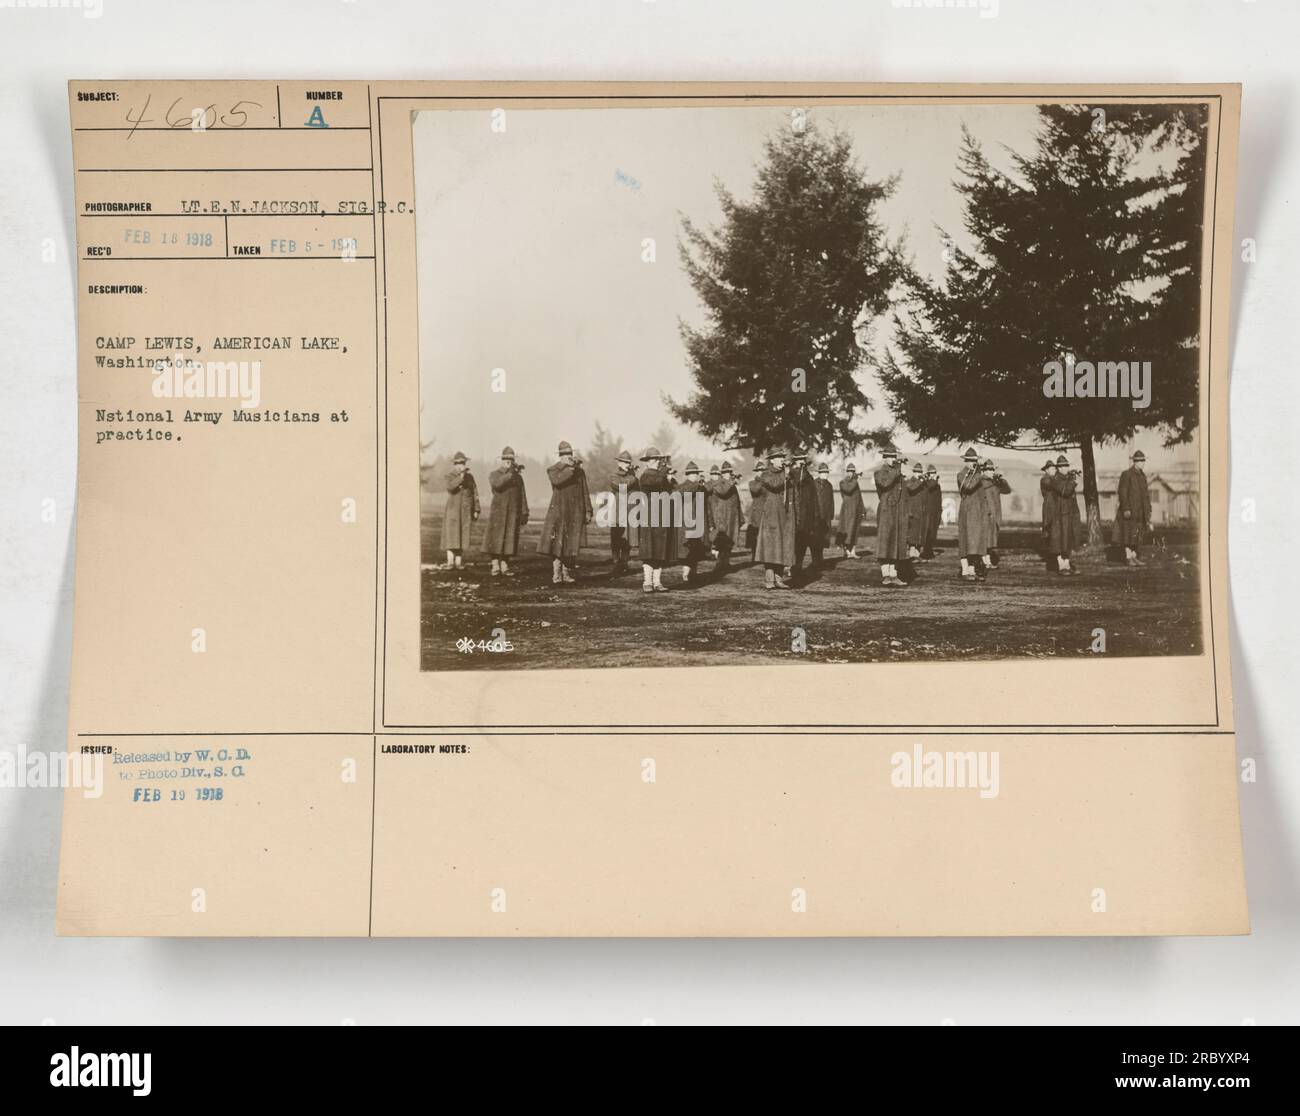 Fotografo T.E.N. Jackson catturò questa immagine il 5 febbraio 1918 a Camp Lewis, American Lake, Washington. La fotografia raffigura i musicisti dell'esercito nazionale durante la loro sessione di pratica. L'immagine è stata rilasciata dalla W.O.D. alla Photo Division il 18 febbraio 1918. Foto Stock